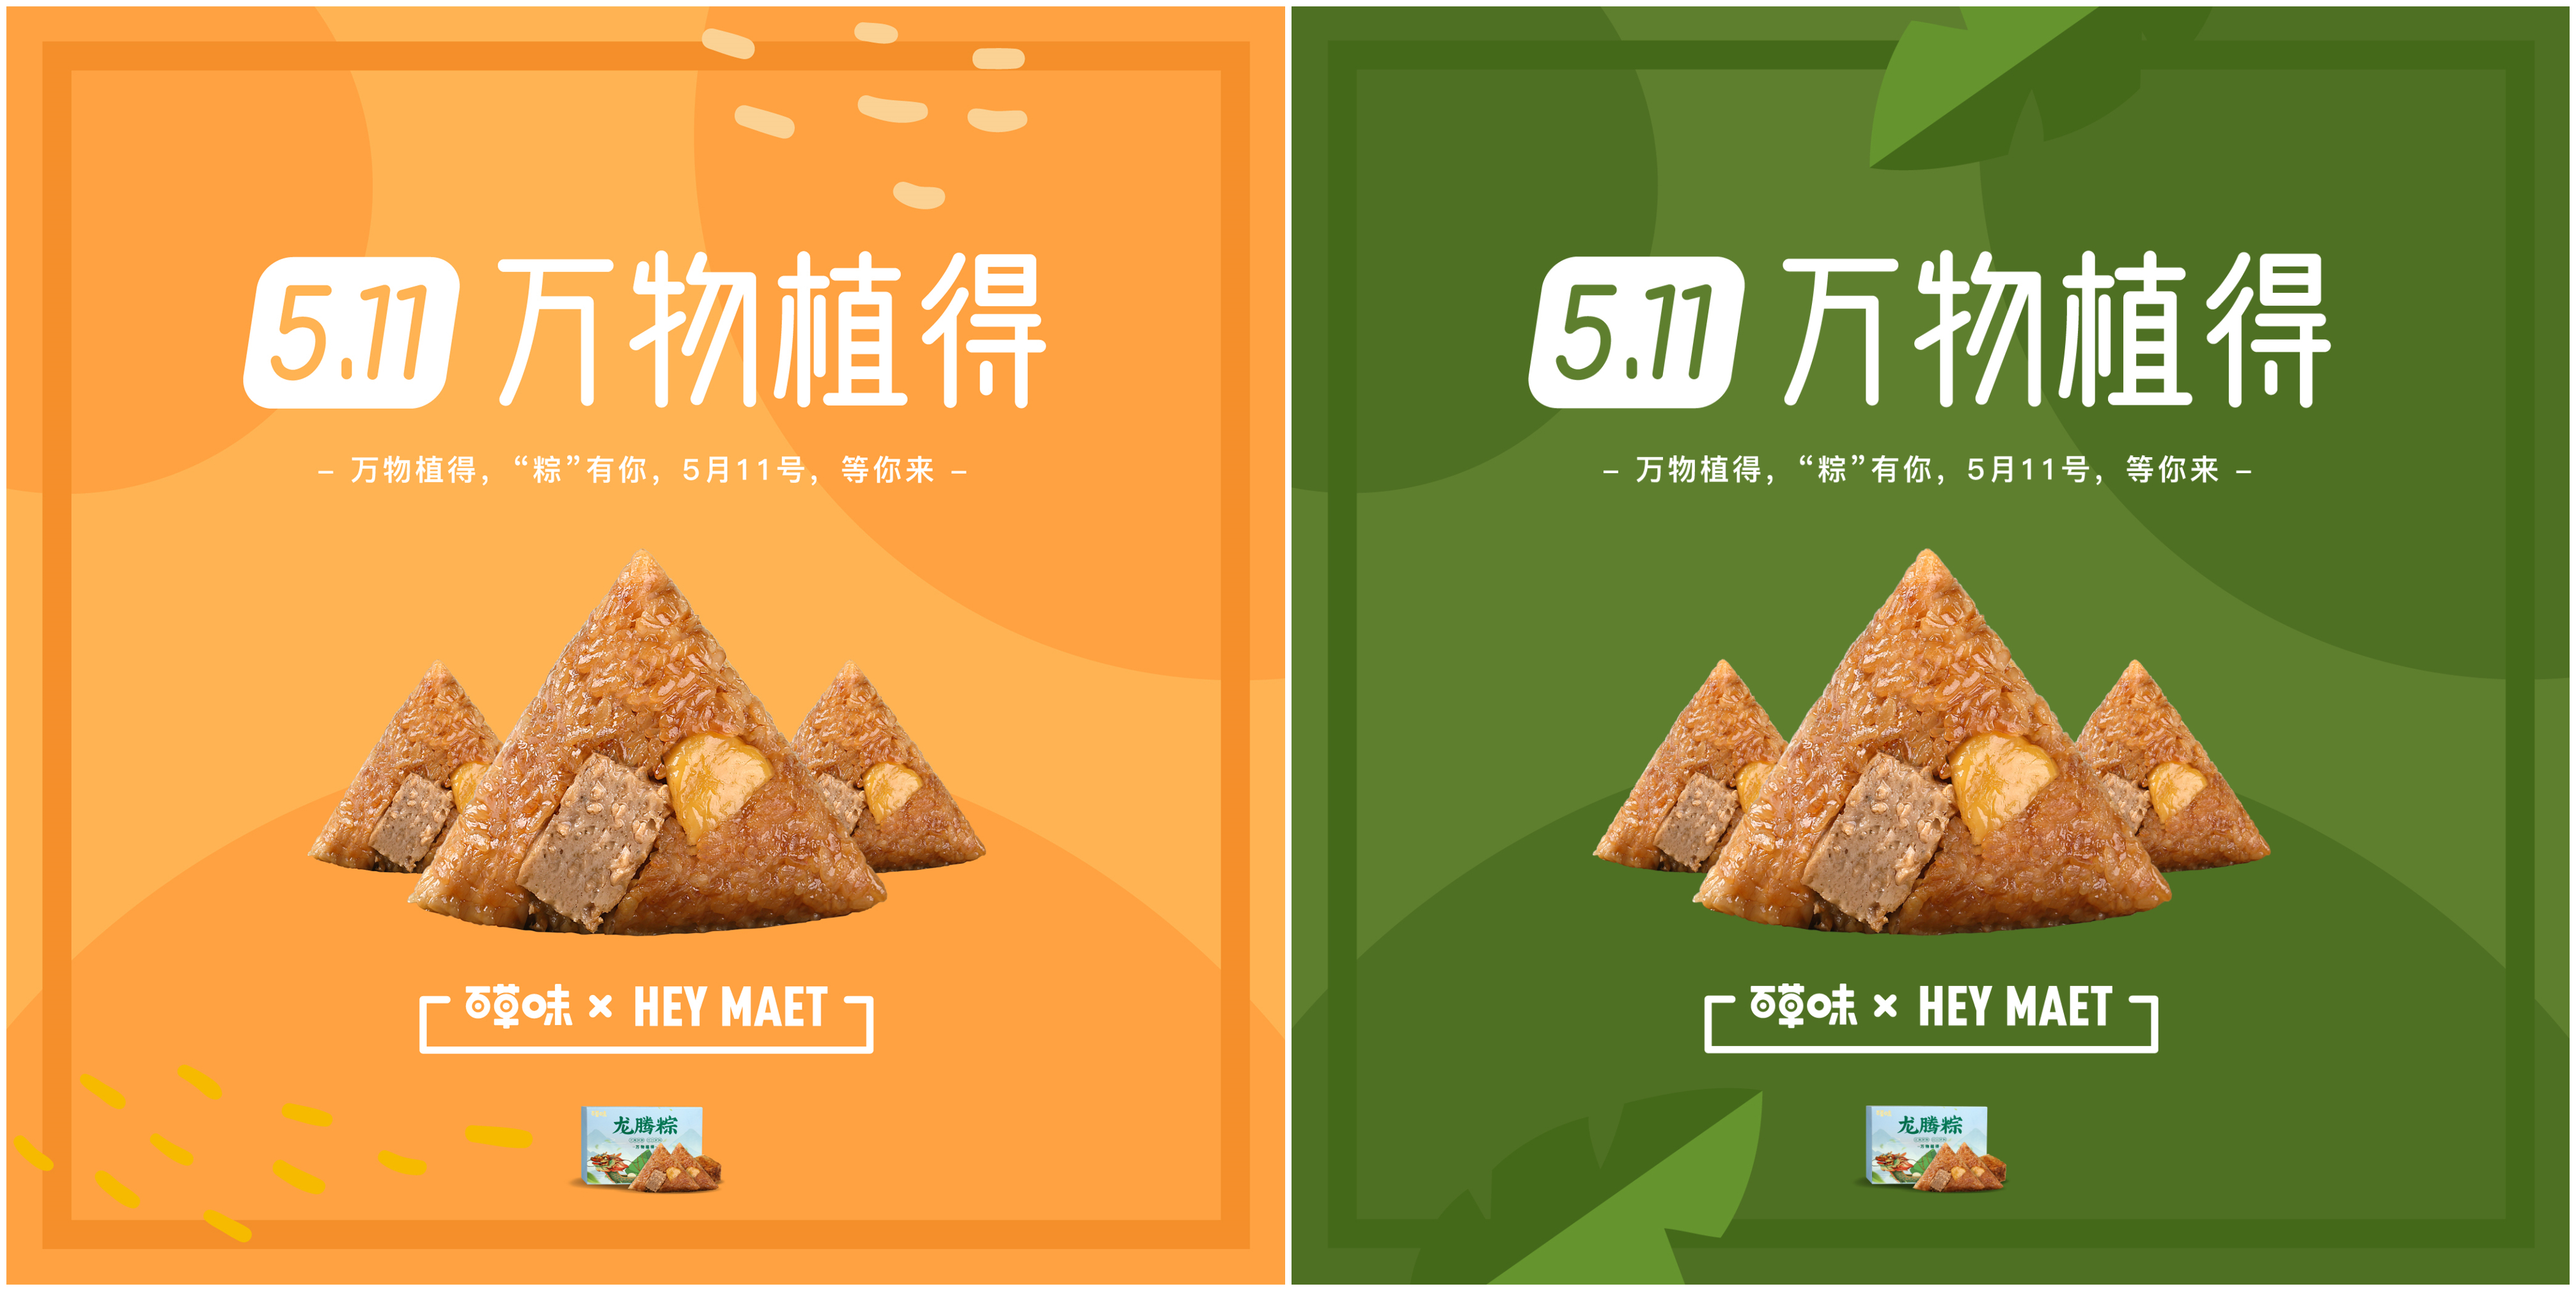 植物肉市场持续爆发，中国创企「Hey Maet」联合百草味共同推出植物肉粽子